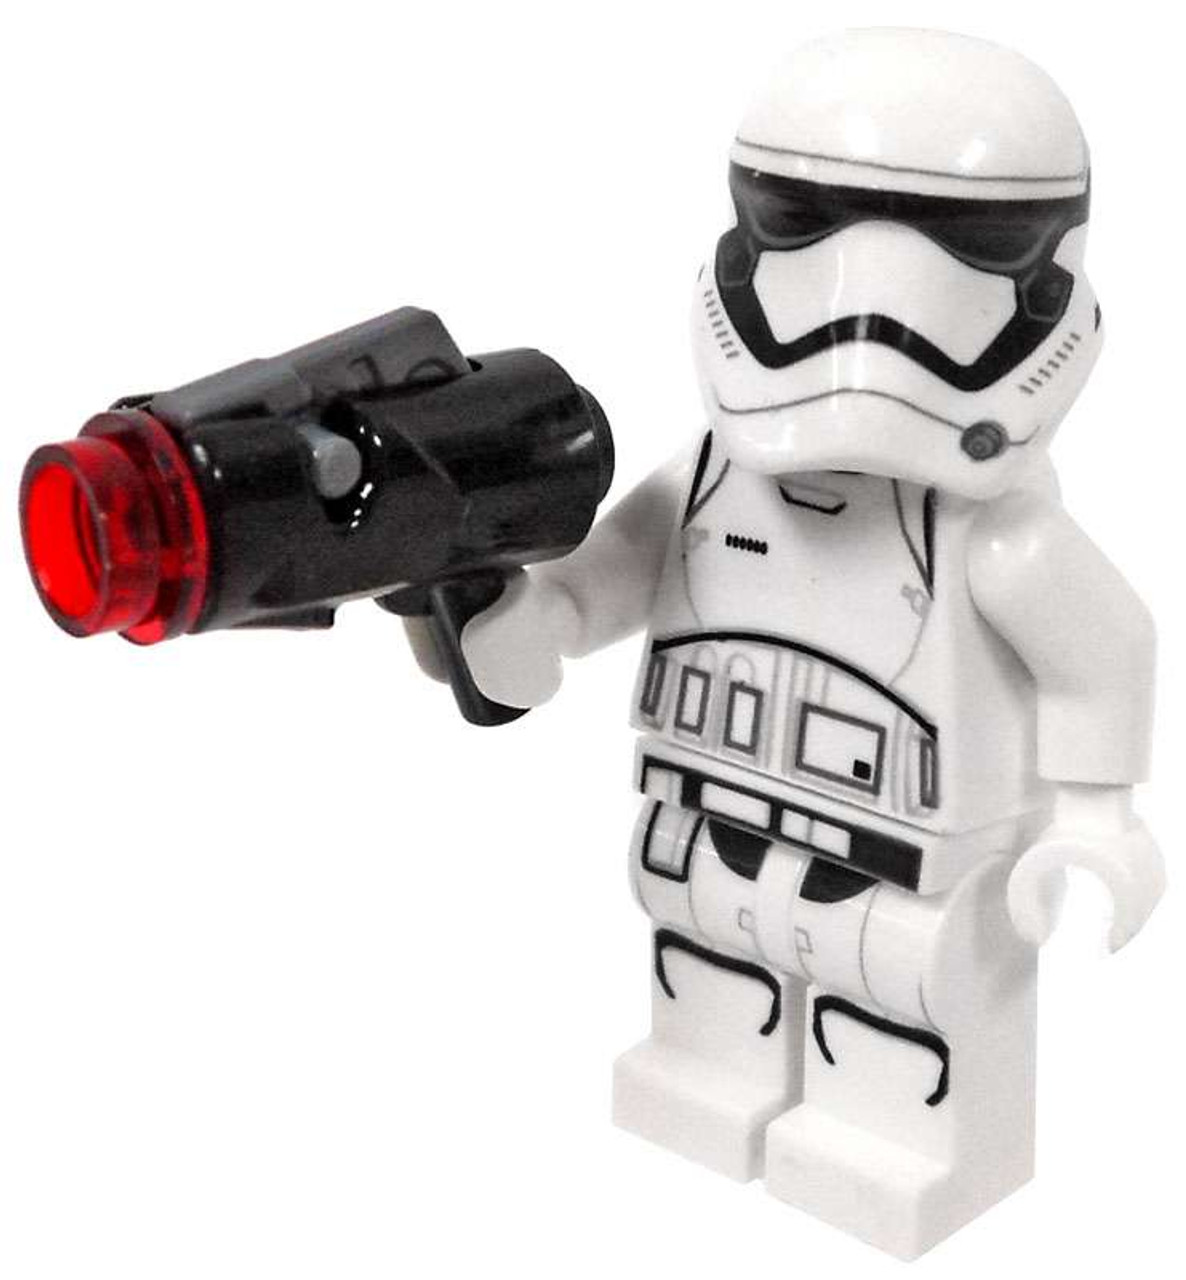 stormtrooper minifigures